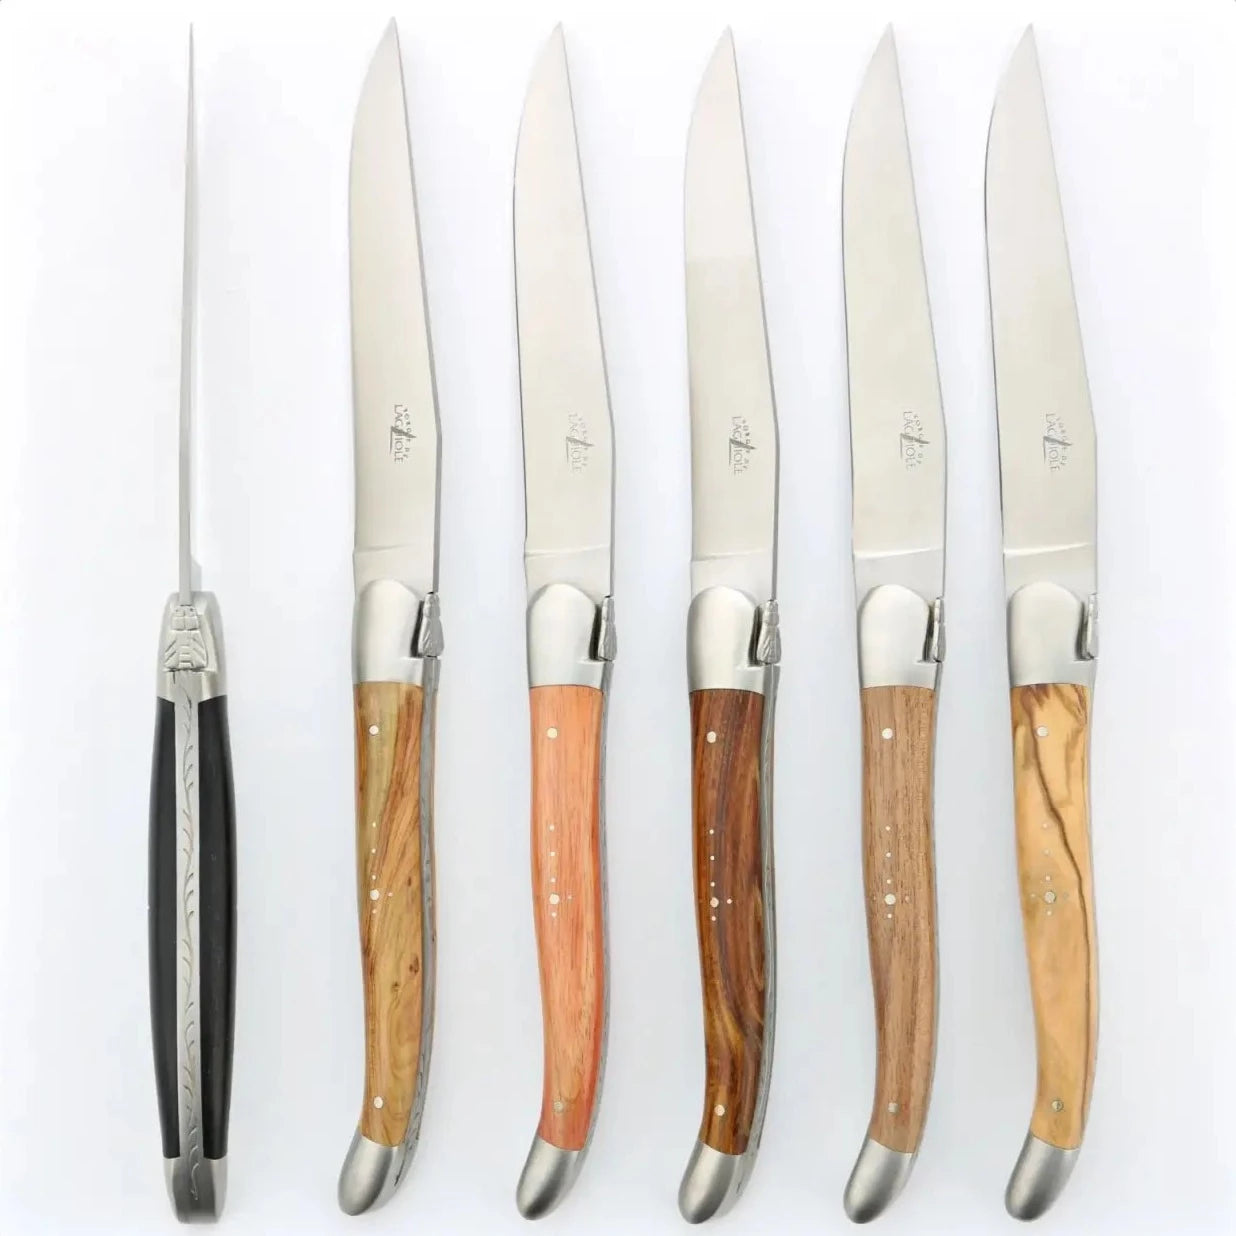 https://www.forge-de-laguiole-usa.com/cdn/shop/files/Forge-de-Laguiole-6-Piece-Steak-Knife-Set-Assorted-Wood-Handle-Satin-Finish.webp?v=1694251650